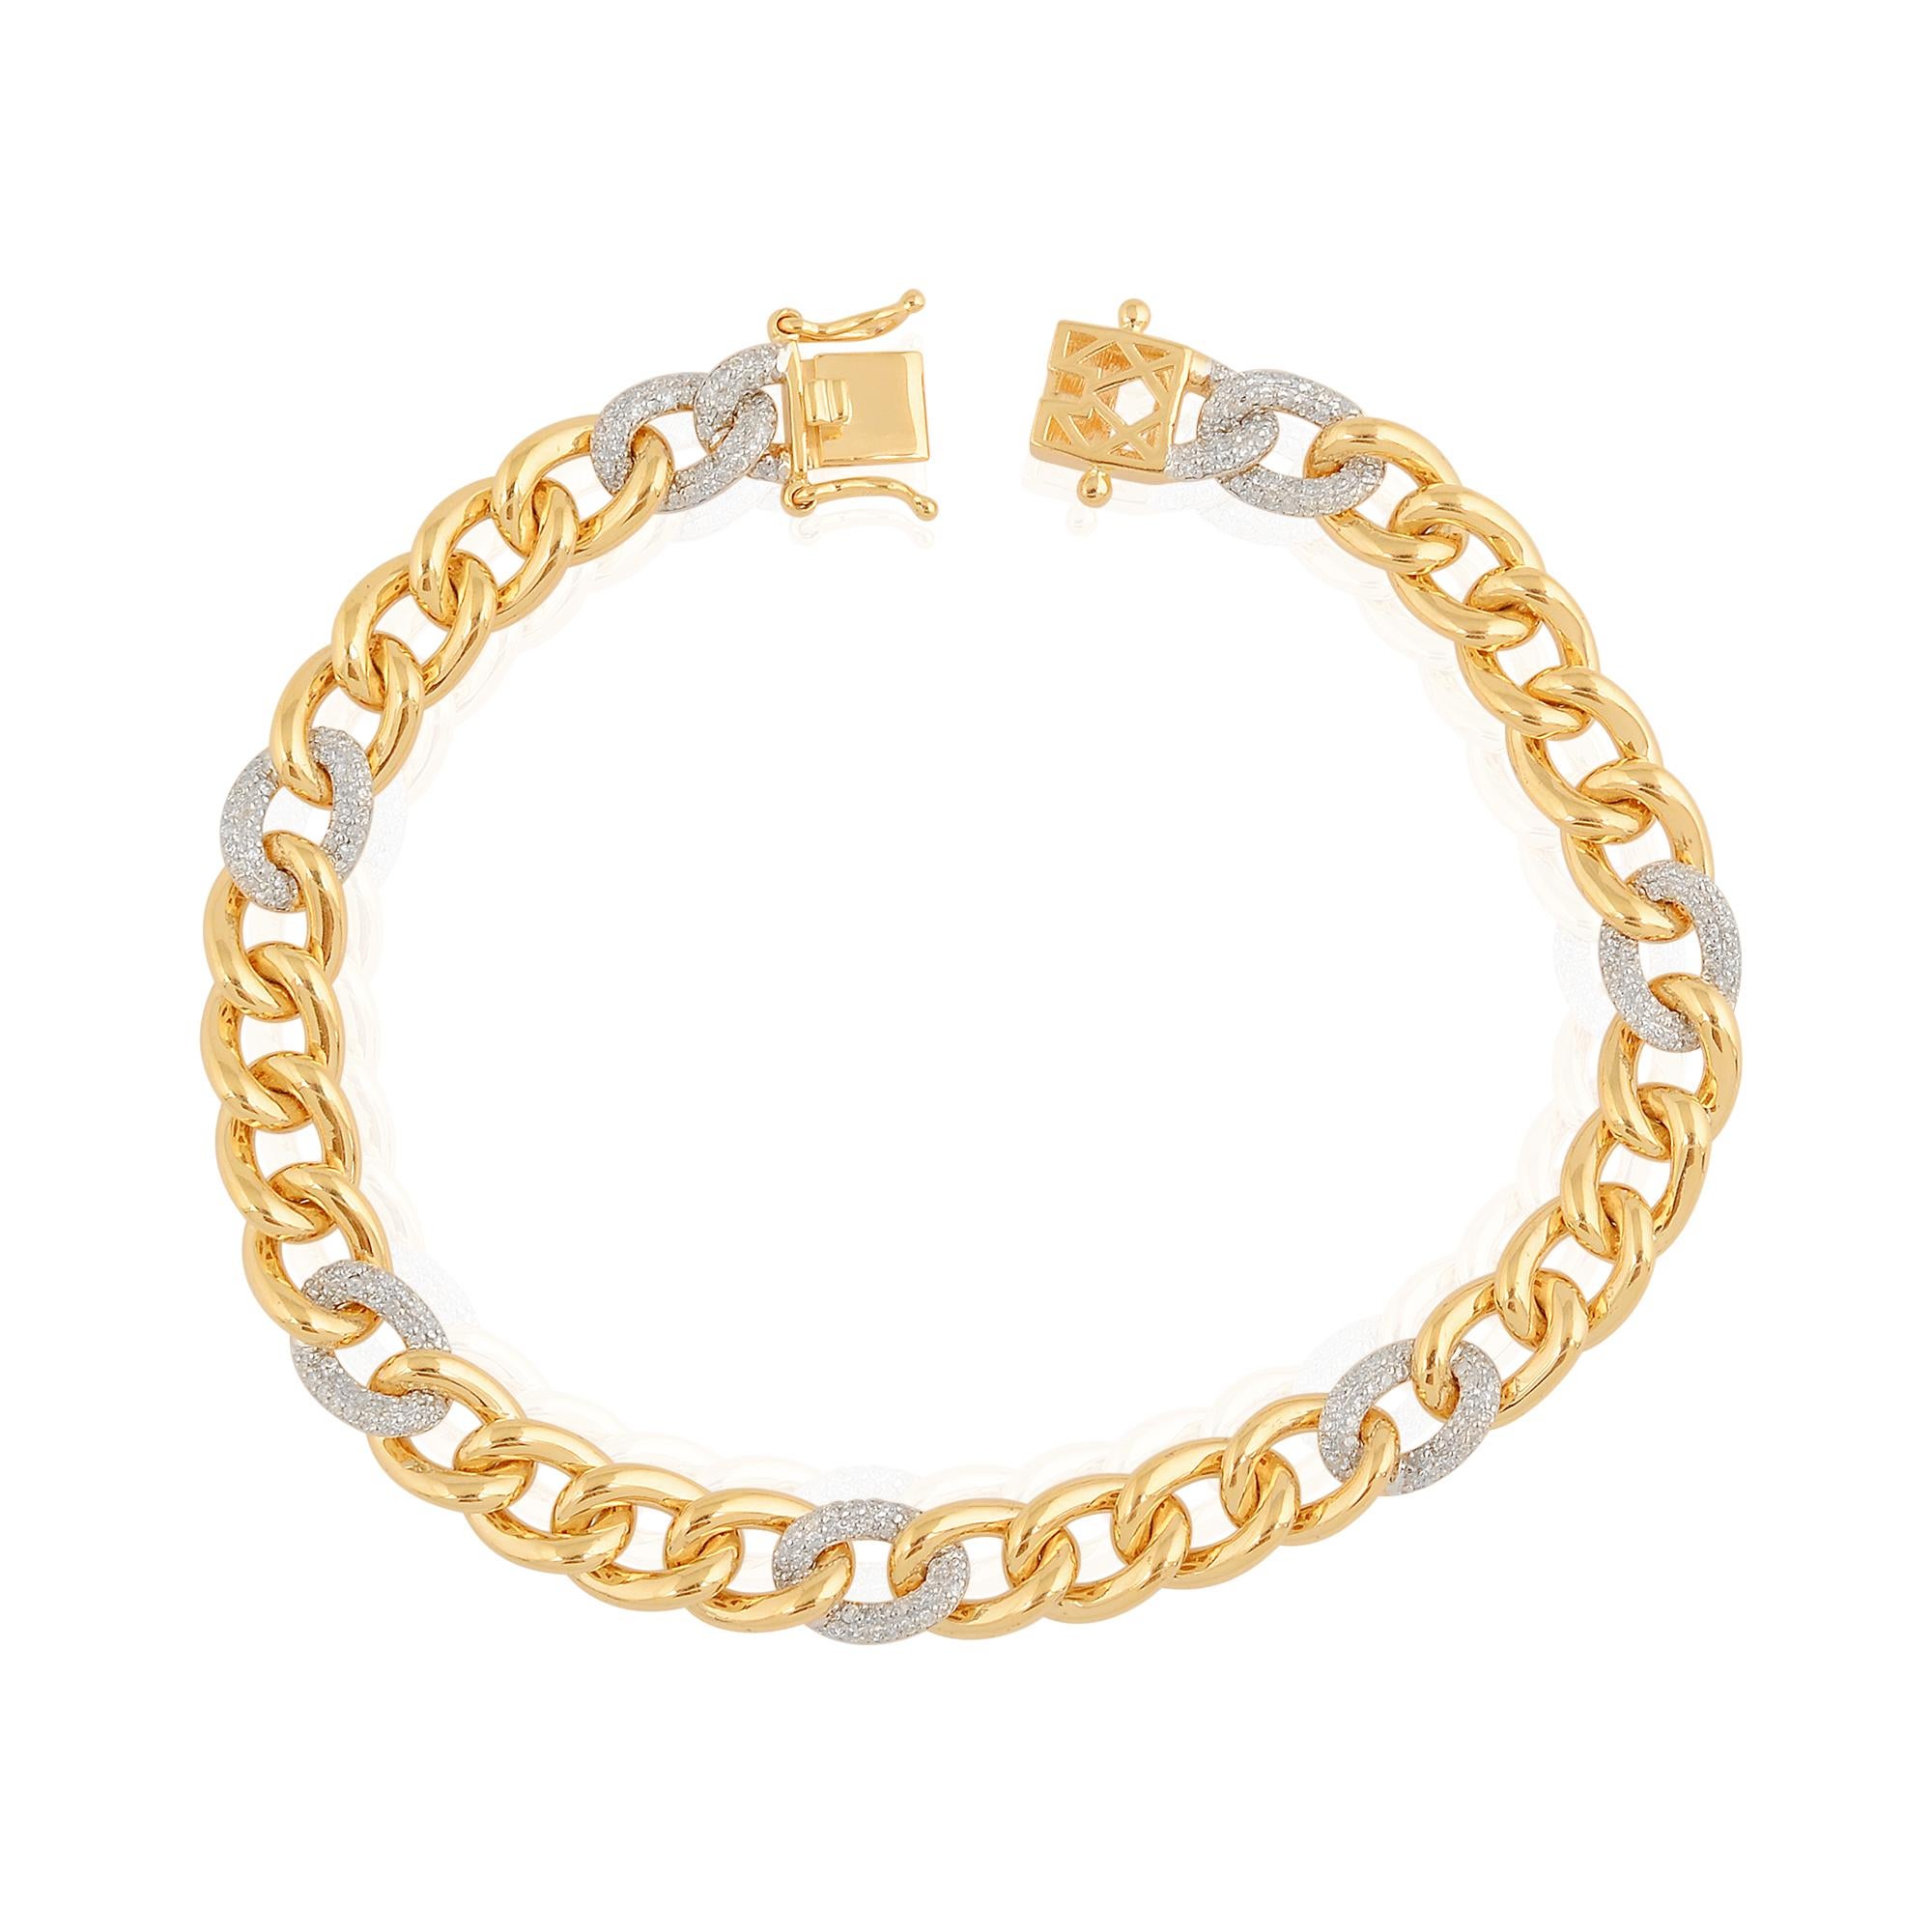 Une touche éblouissante de diamant sur la base en or jaune 18k qui ajoute à l'élégance de l'ornement. Un élégant bracelet de parure qui ne manquera pas d'attirer l'attention !

✧✧Welcome To Our Shop Spectrum Jewels✧

